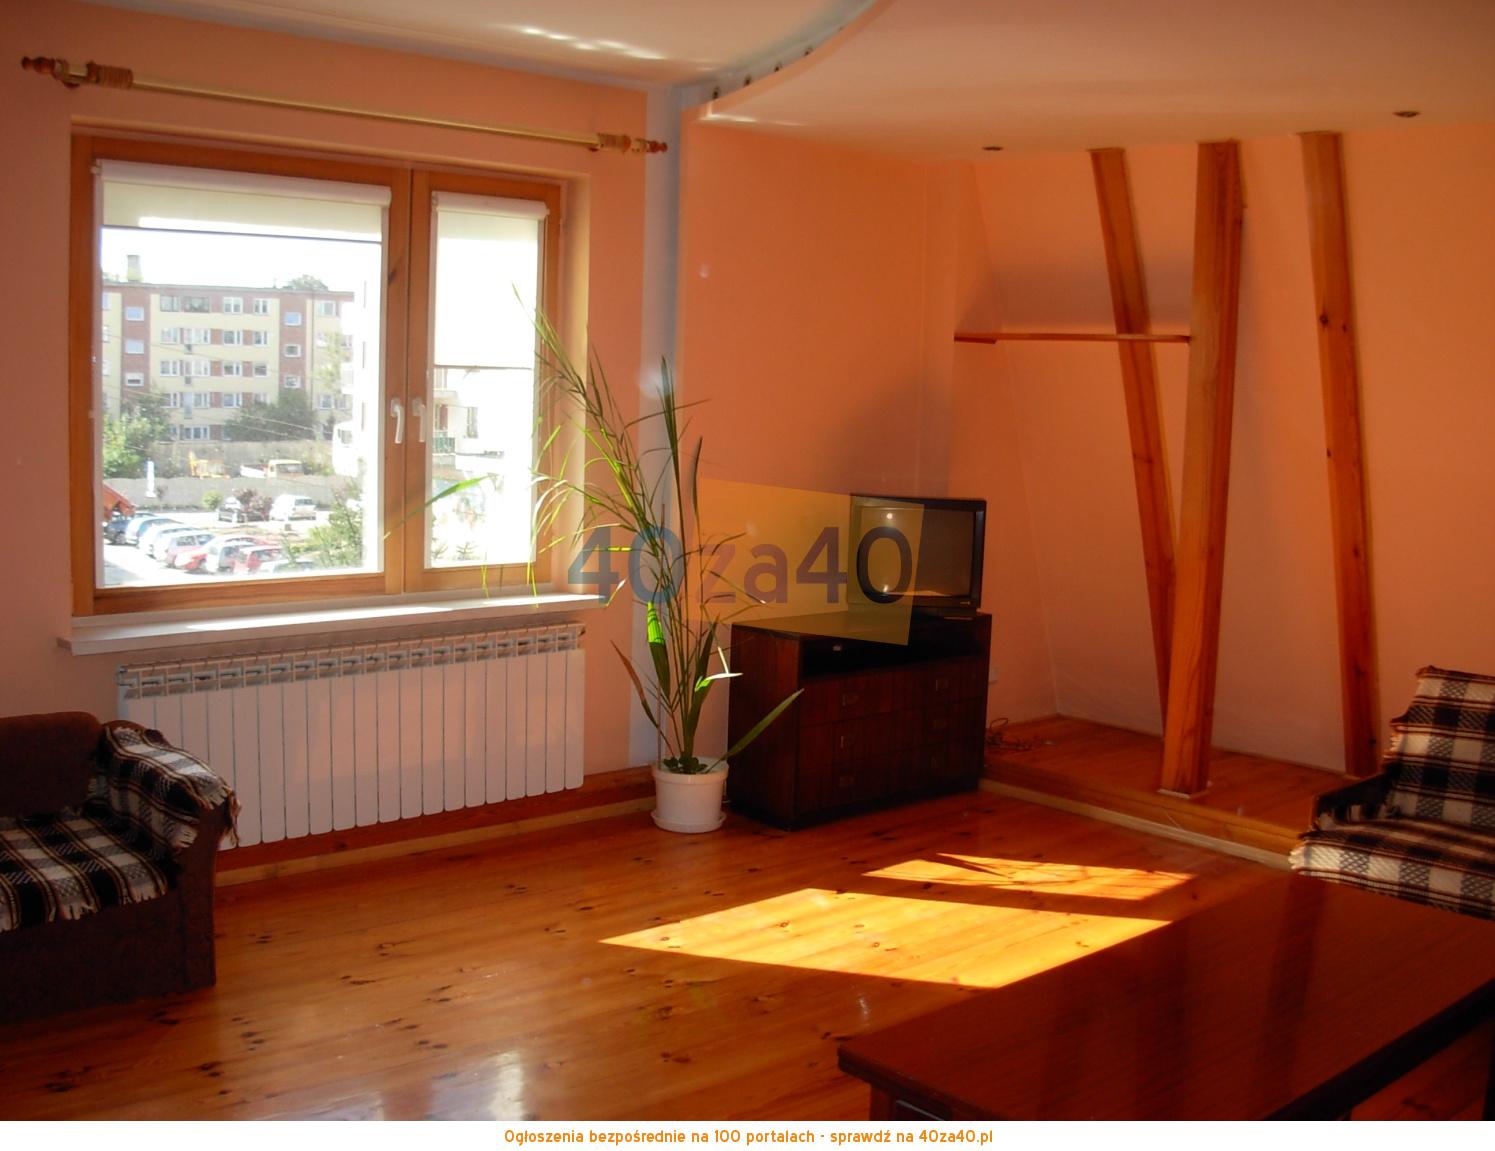 Mieszkanie do wynajęcia, pokoje: 2, cena: 1 000,00 PLN, Strzelin, kontakt: 0691142391